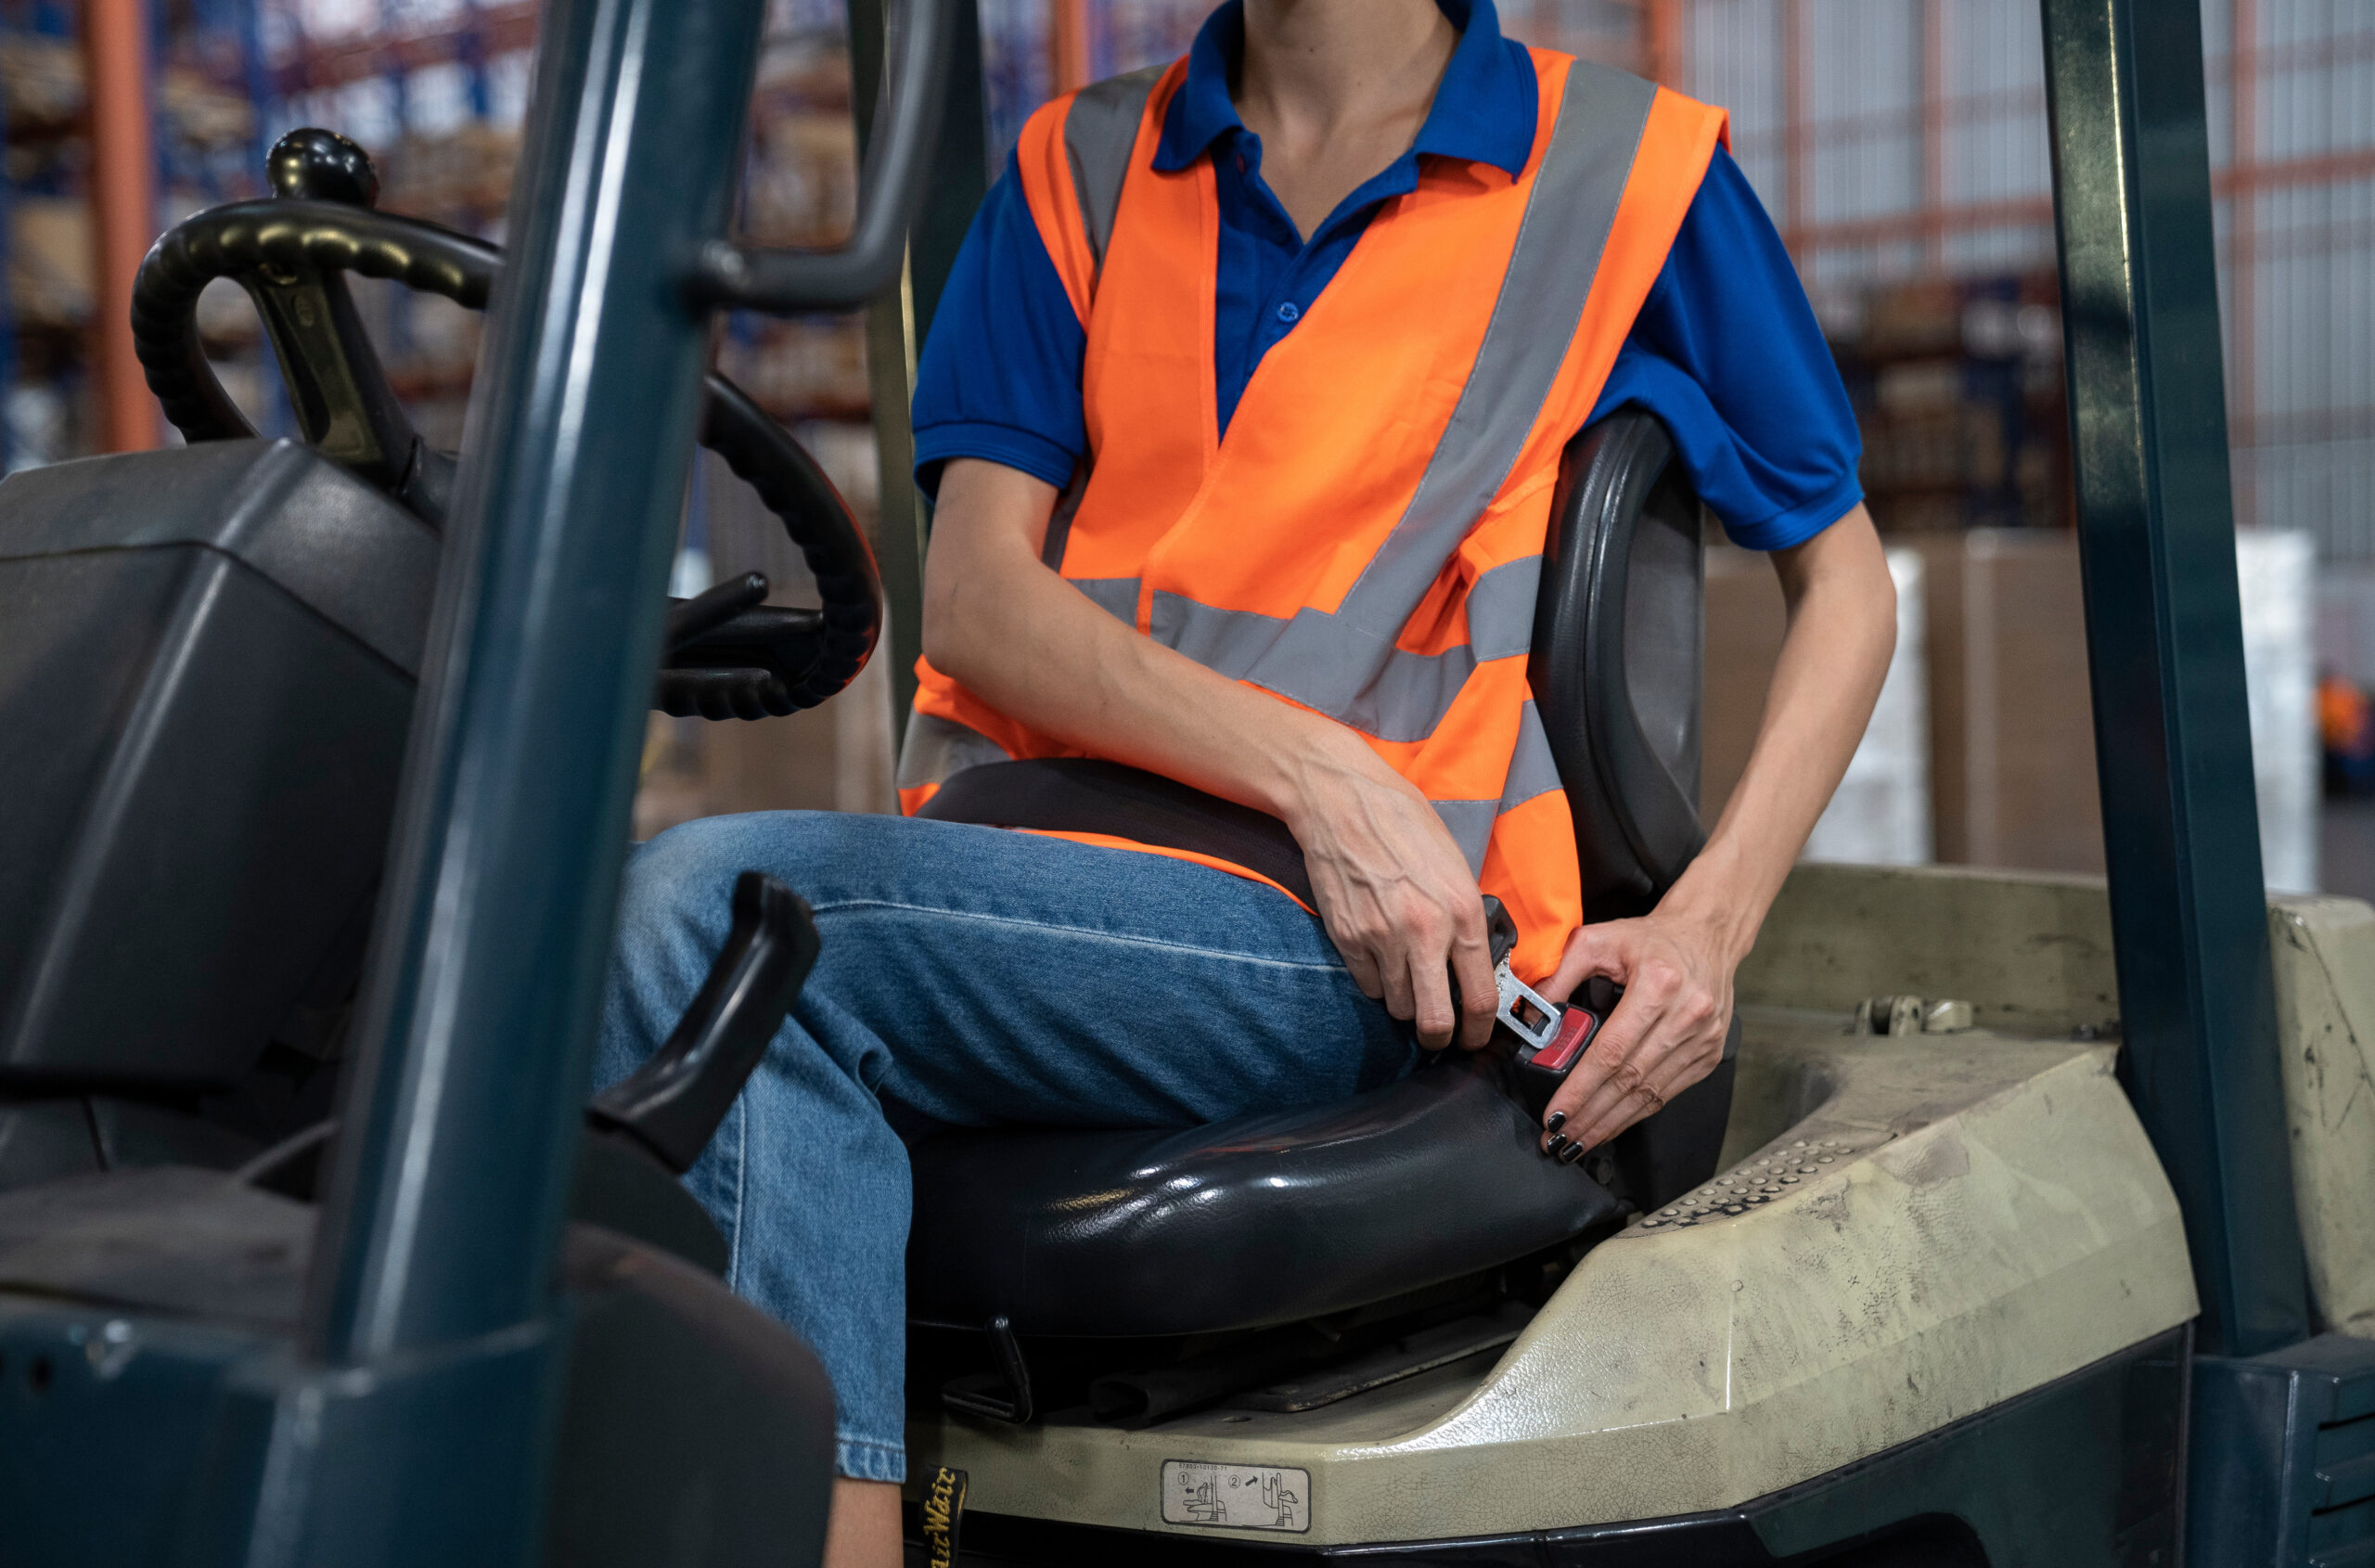 Material handling vehicle Forklift restraint or seatbelt